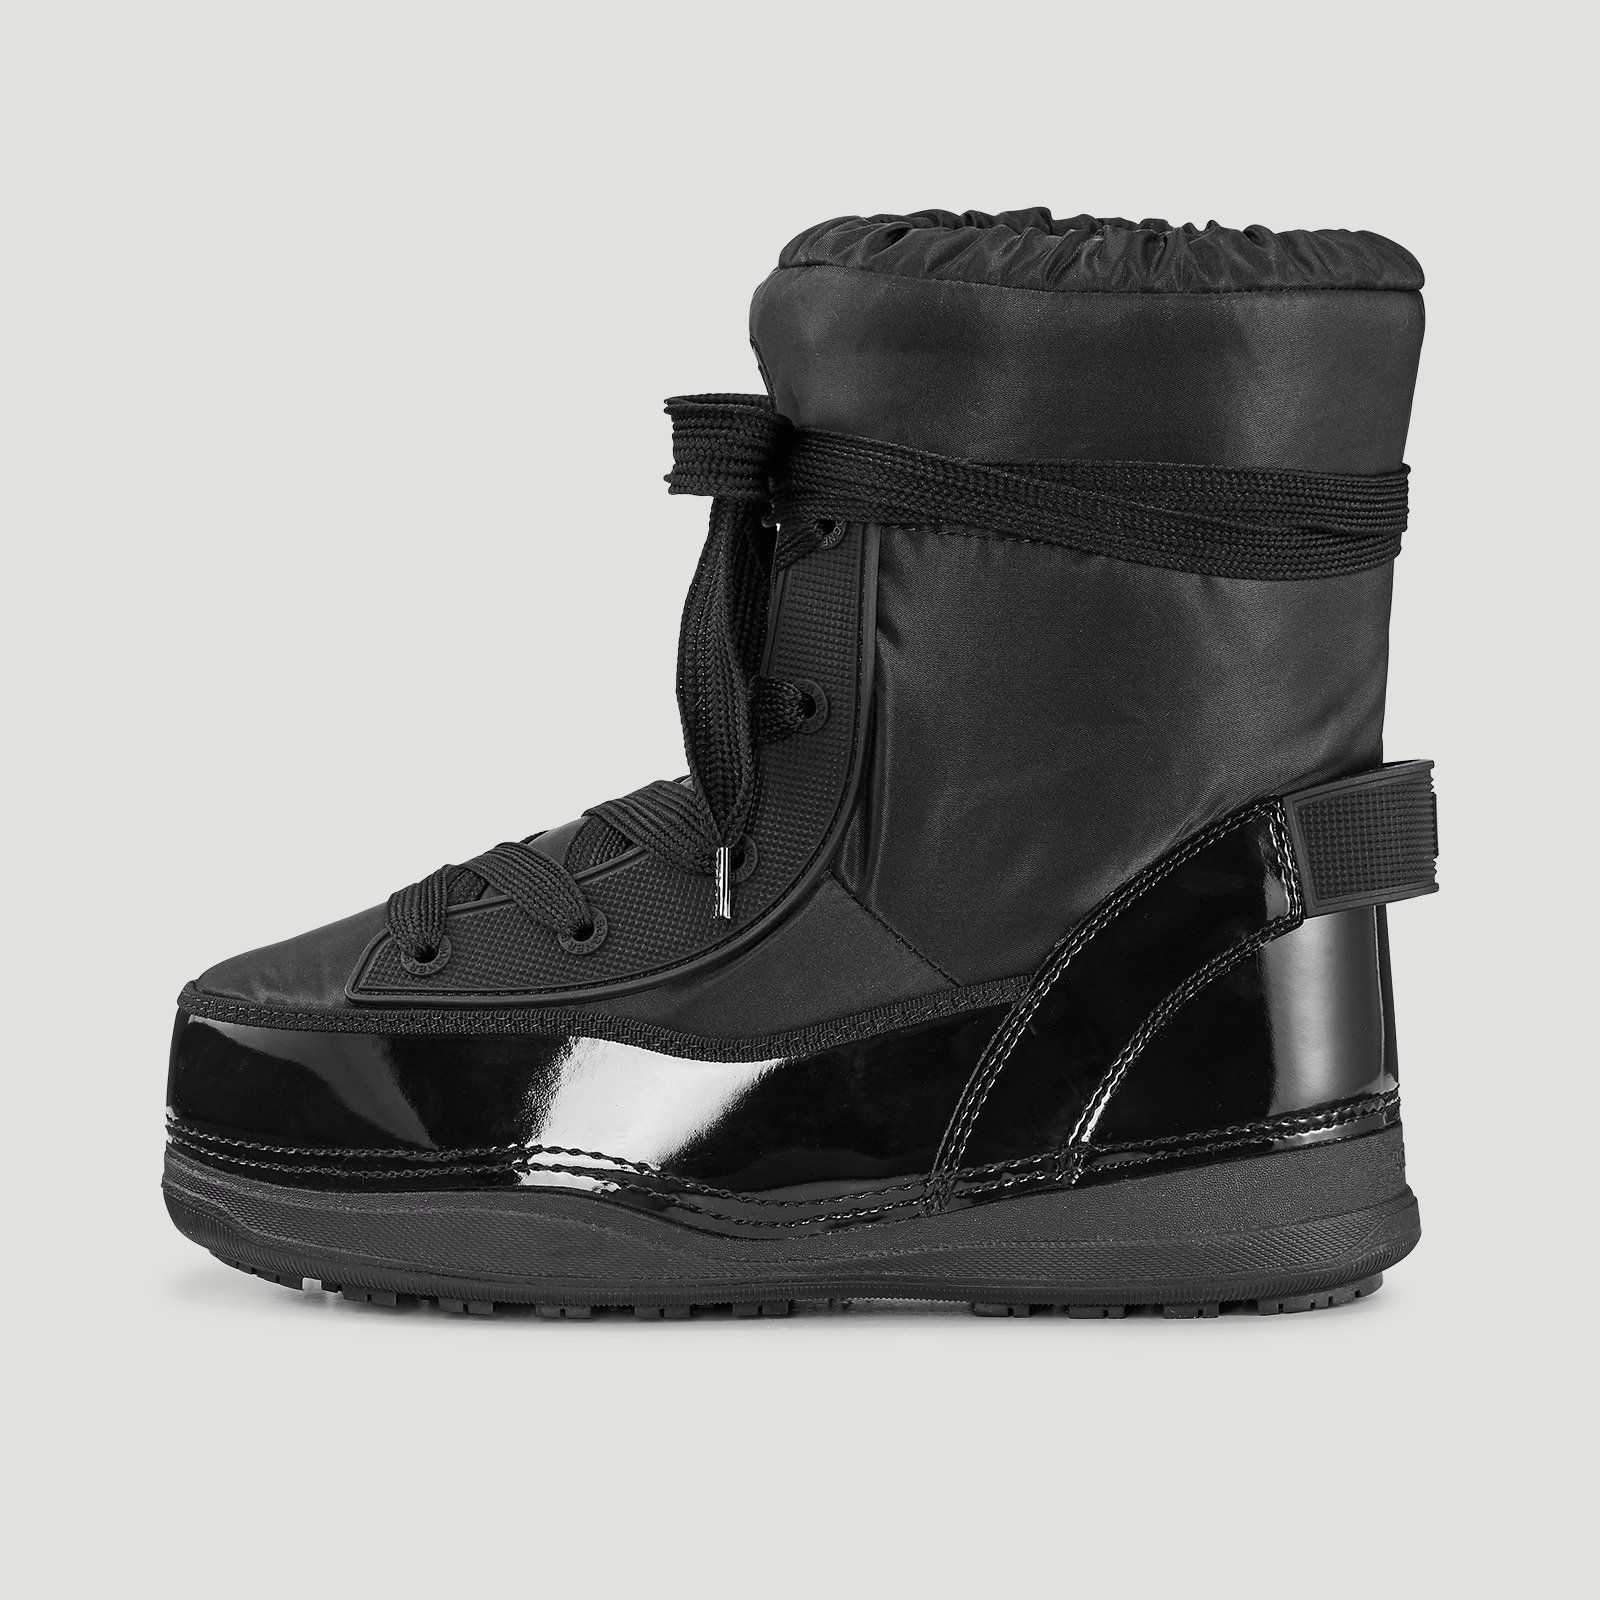 Incaltaminte De Iarna -  bogner La Plagne 1A Snow boots